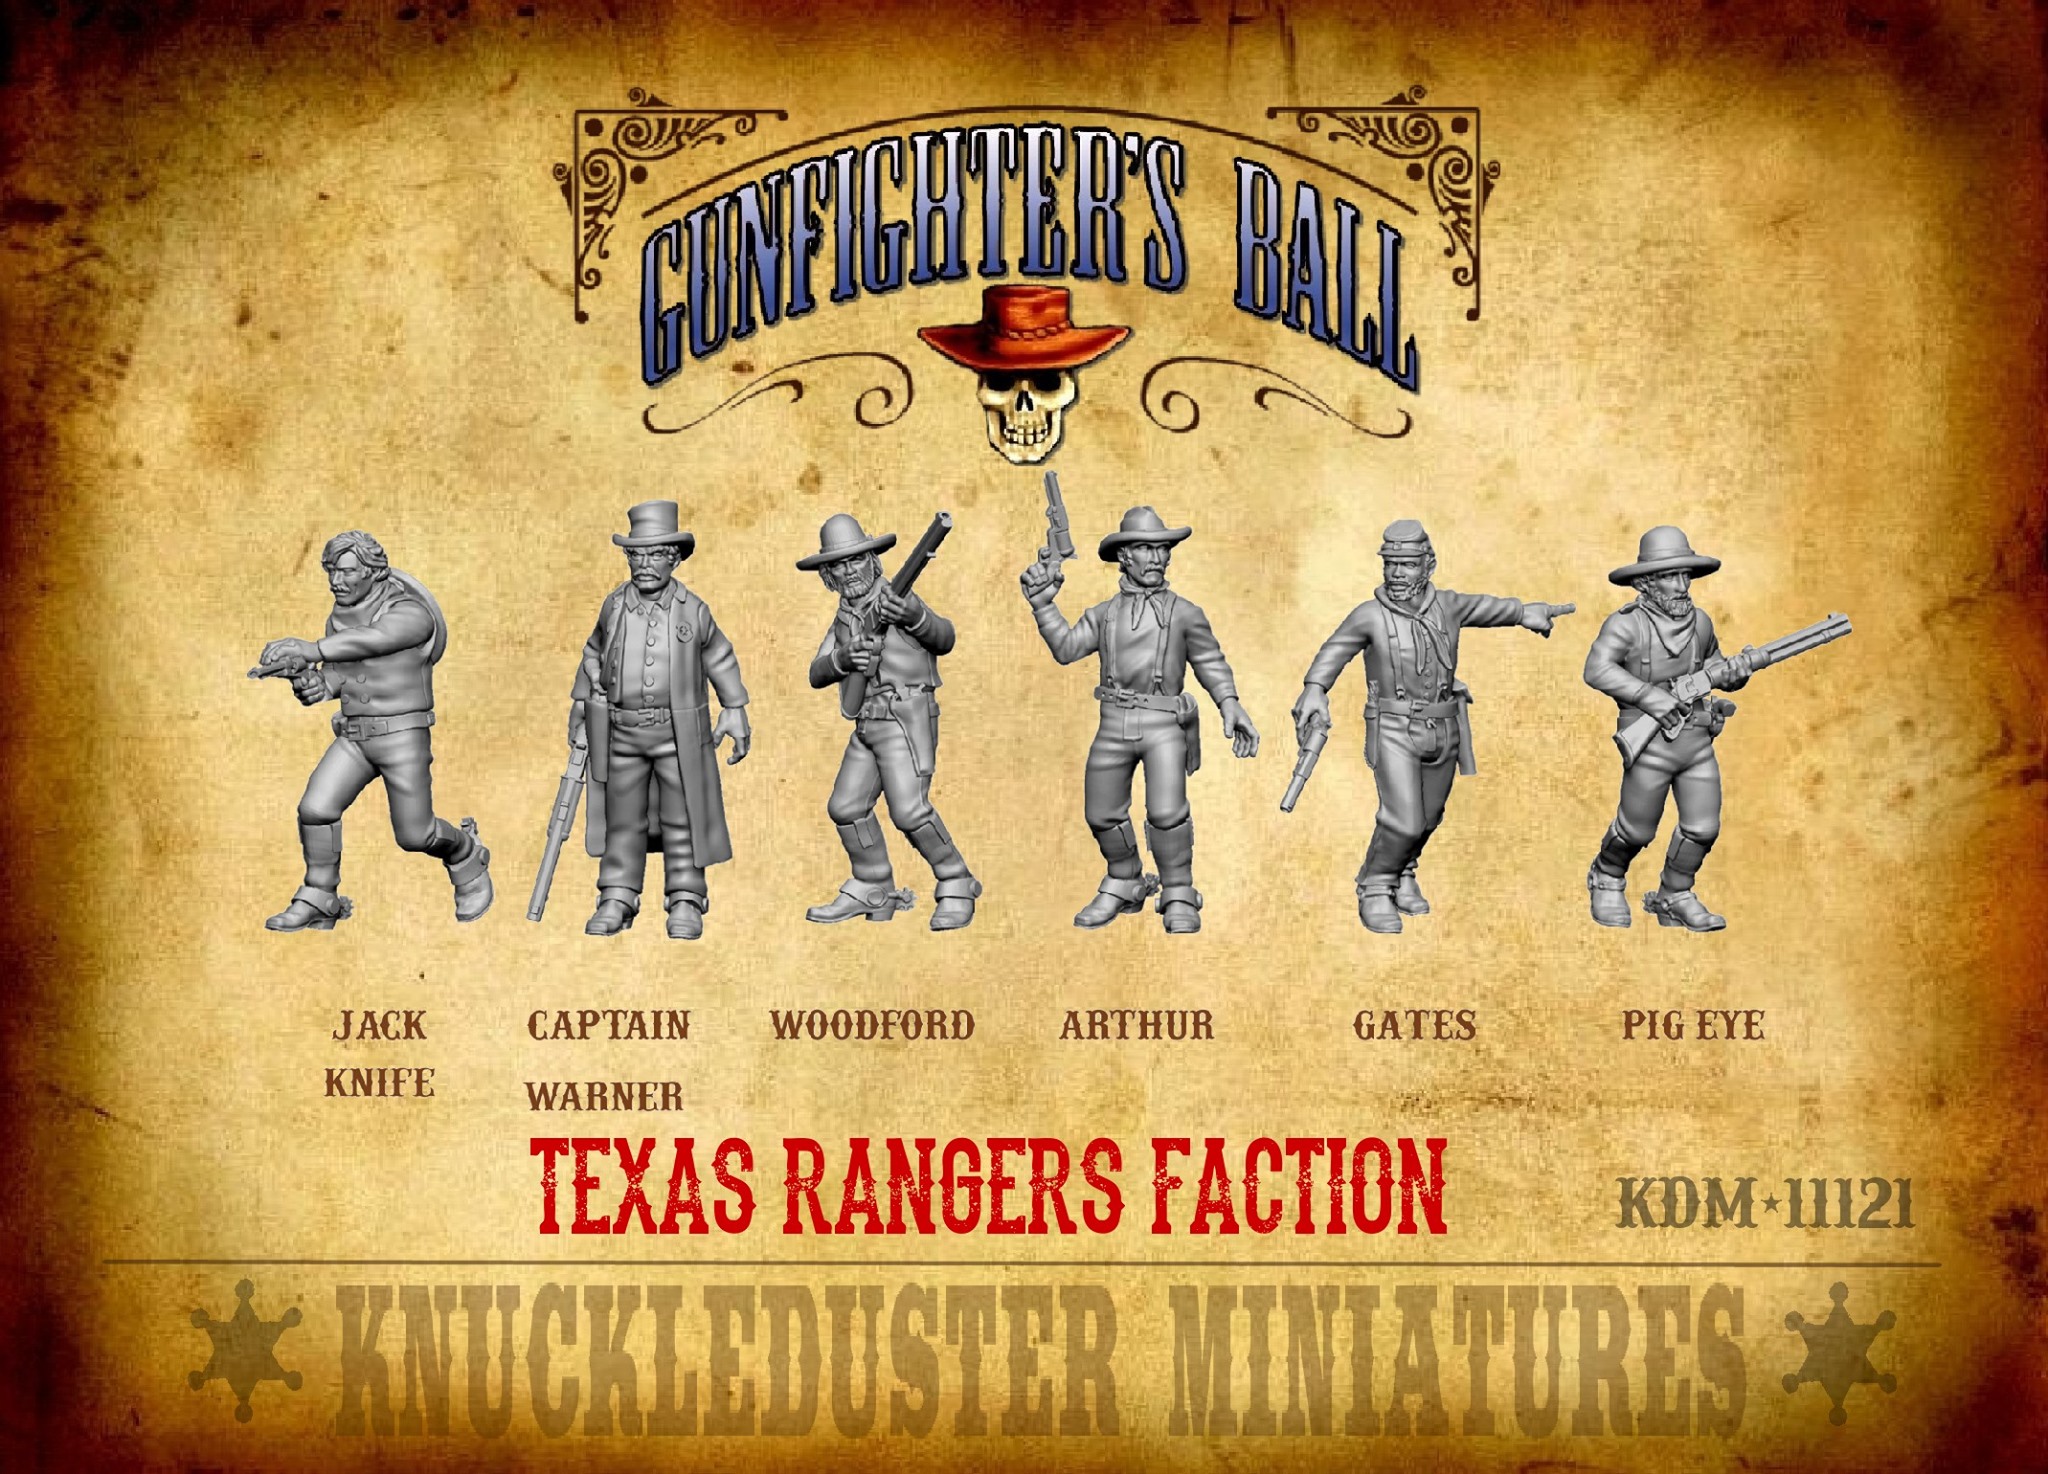 Texas Rangers Faction - Gunfighters Ball